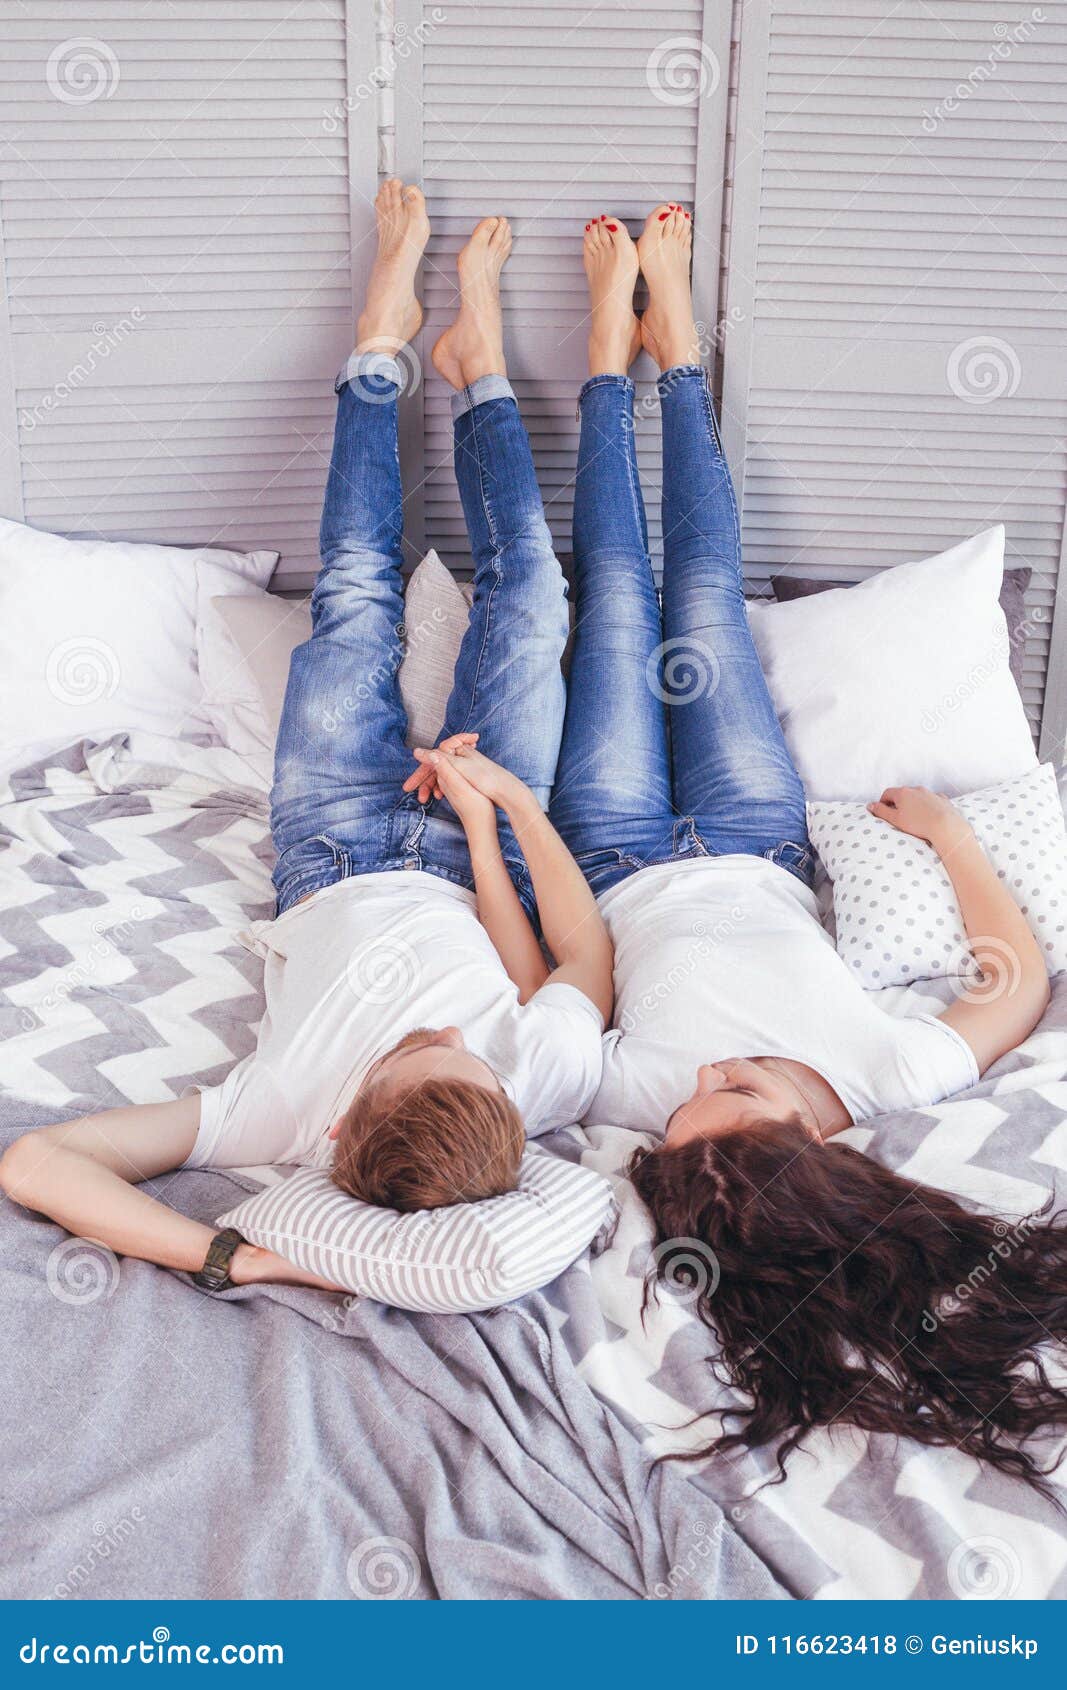 情侣们坐在床上互送情人节礼物照片摄影图片_ID:351997462-Veer图库